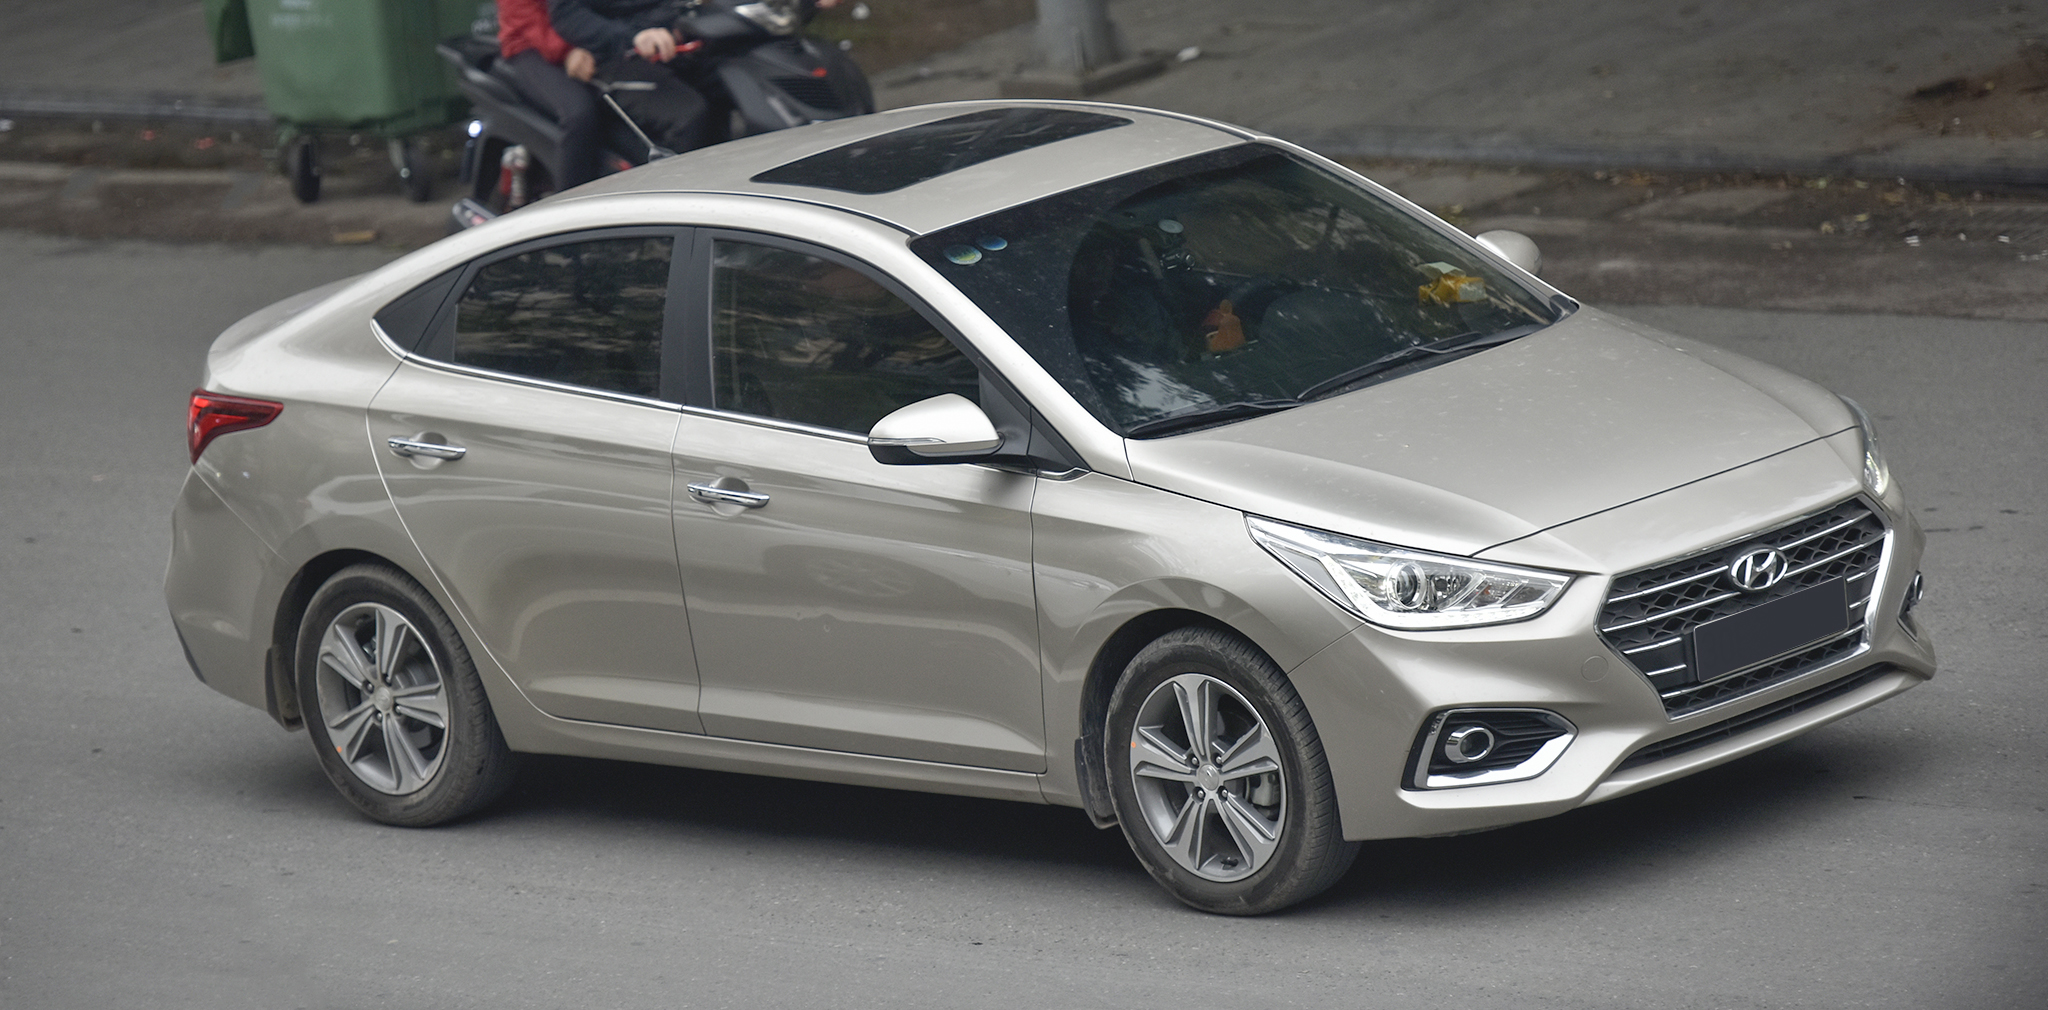 Hyundai công bố doanh số bán hàng tháng 1/2019, Accent dẫn đầu